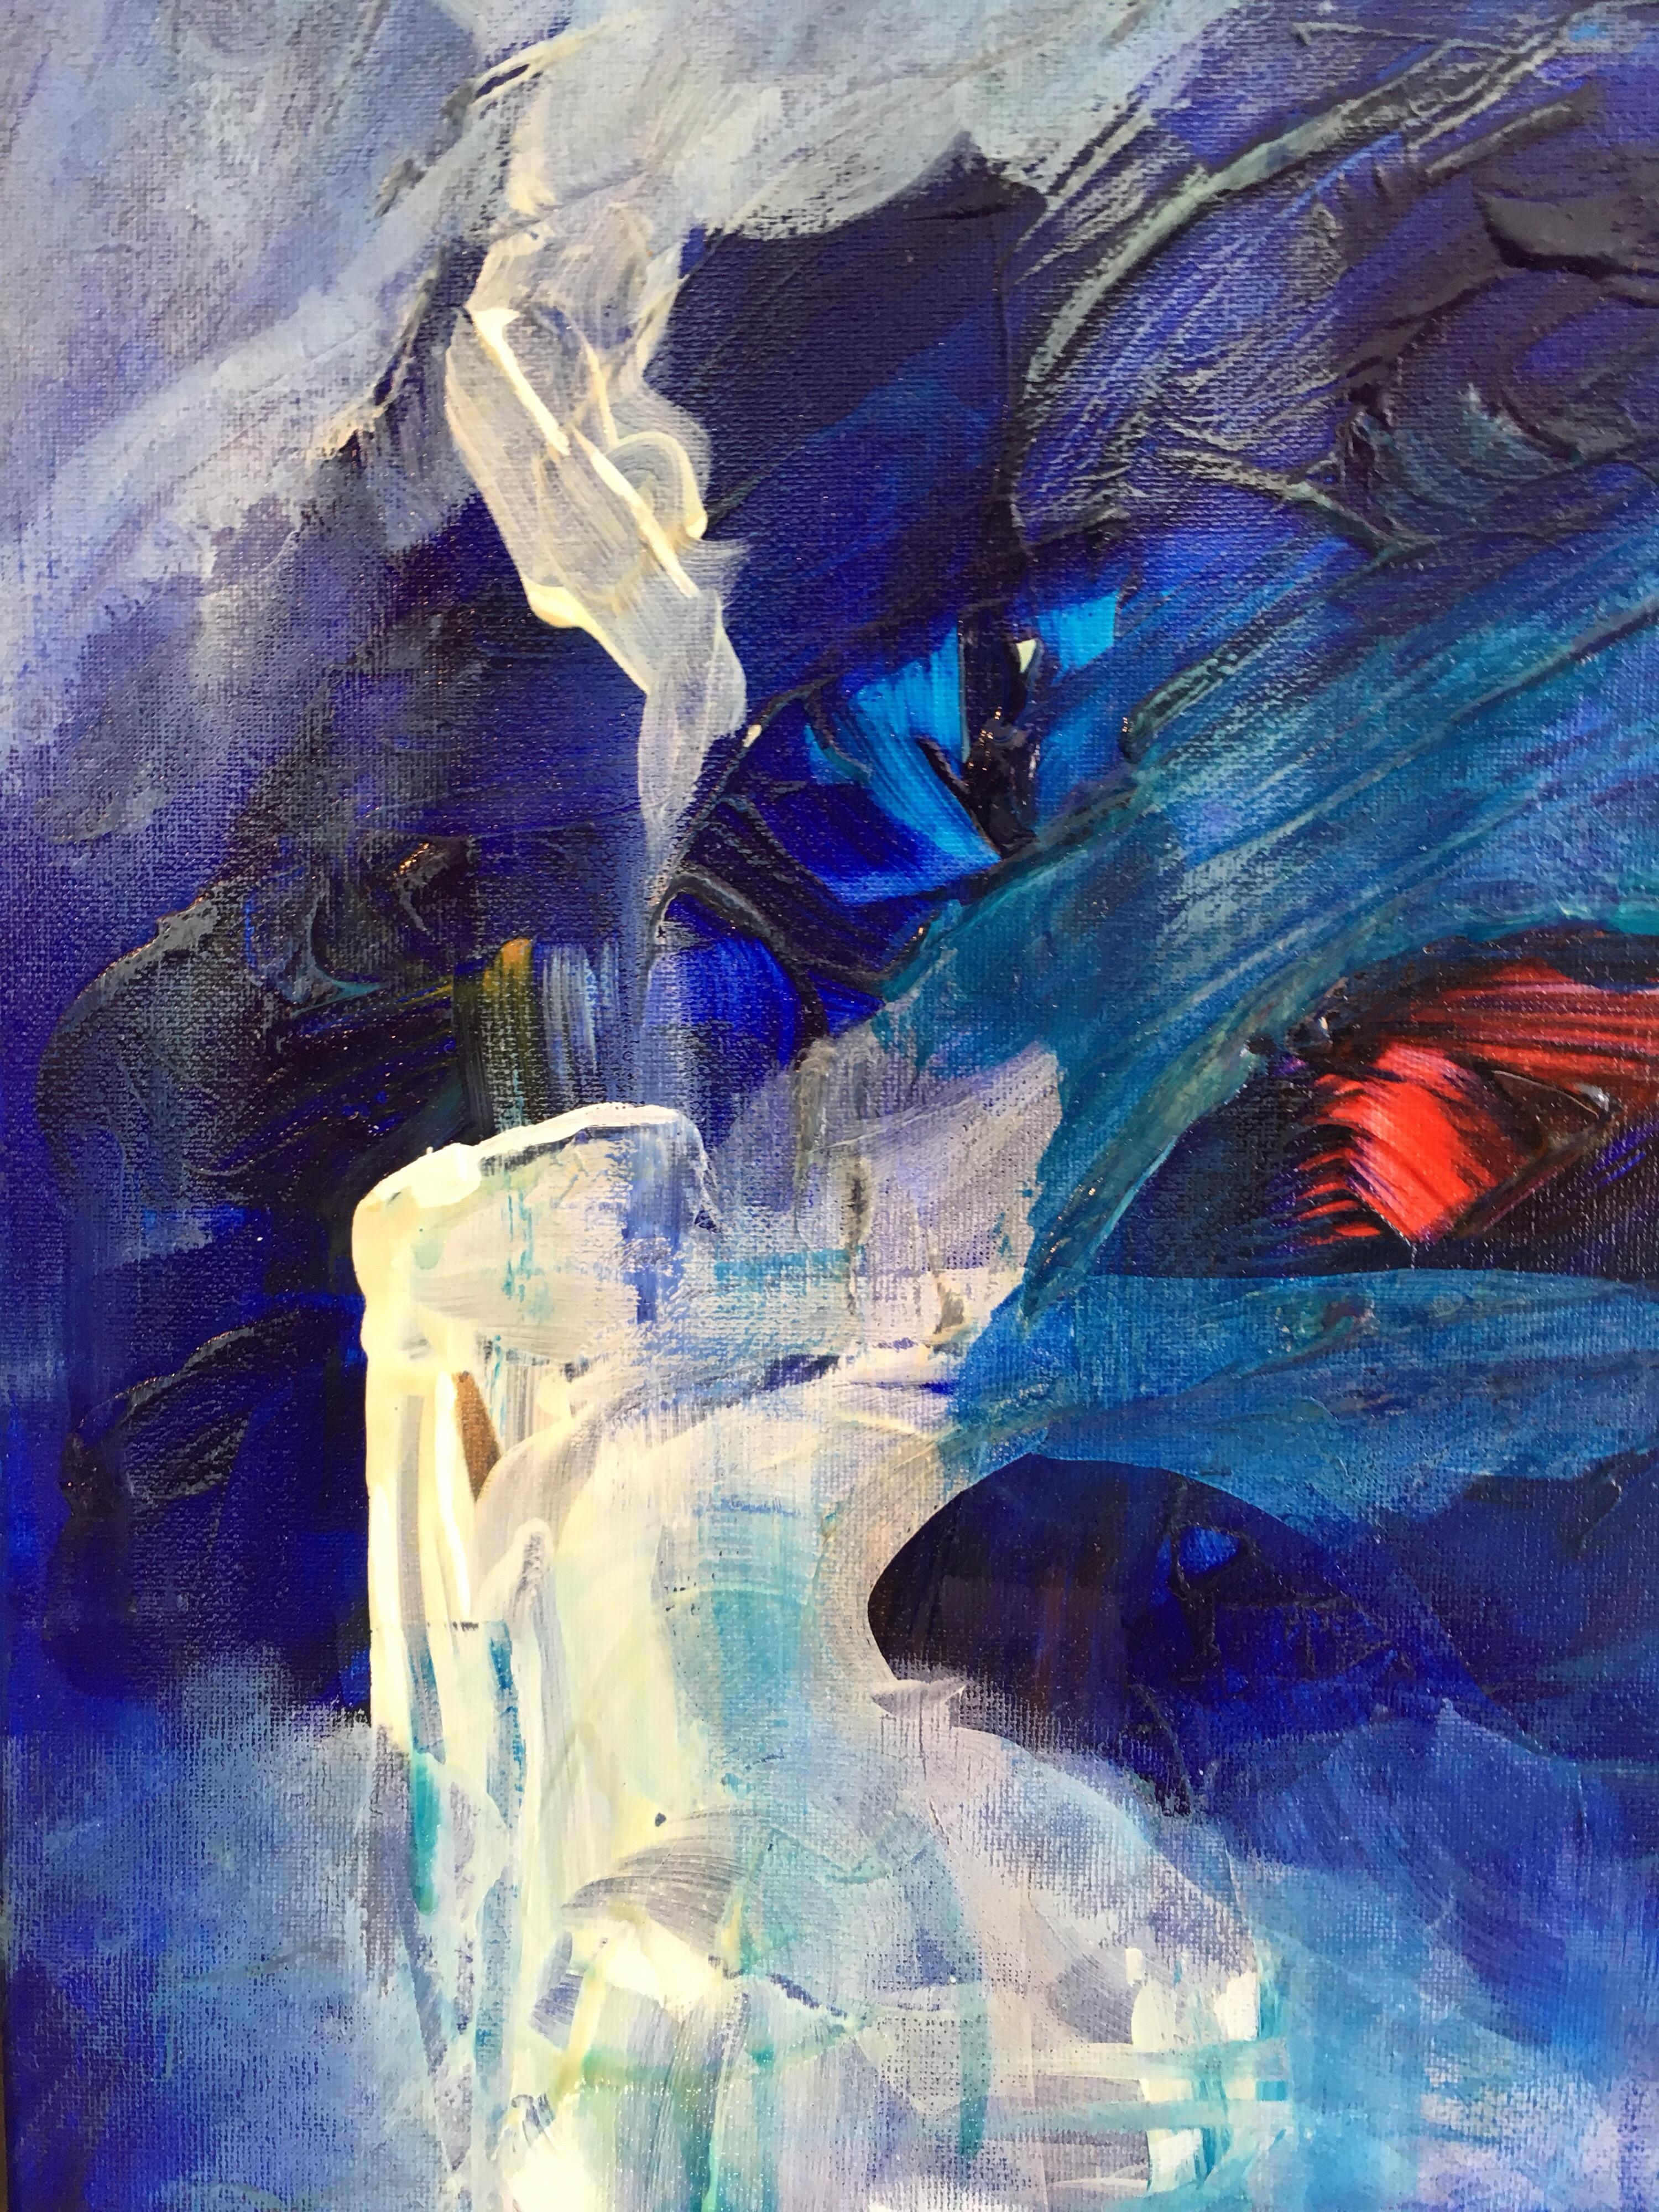 Monde bleu, peinture à l'huile abstraite, signée
Par l'artiste de l'école britannique, 21e siècle
Signé indistinctement dans le coin supérieur arrière.
Peinture à l'huile sur toile, non encadrée
Taille de la toile : 23 x 19.5 pouces

Peinture à